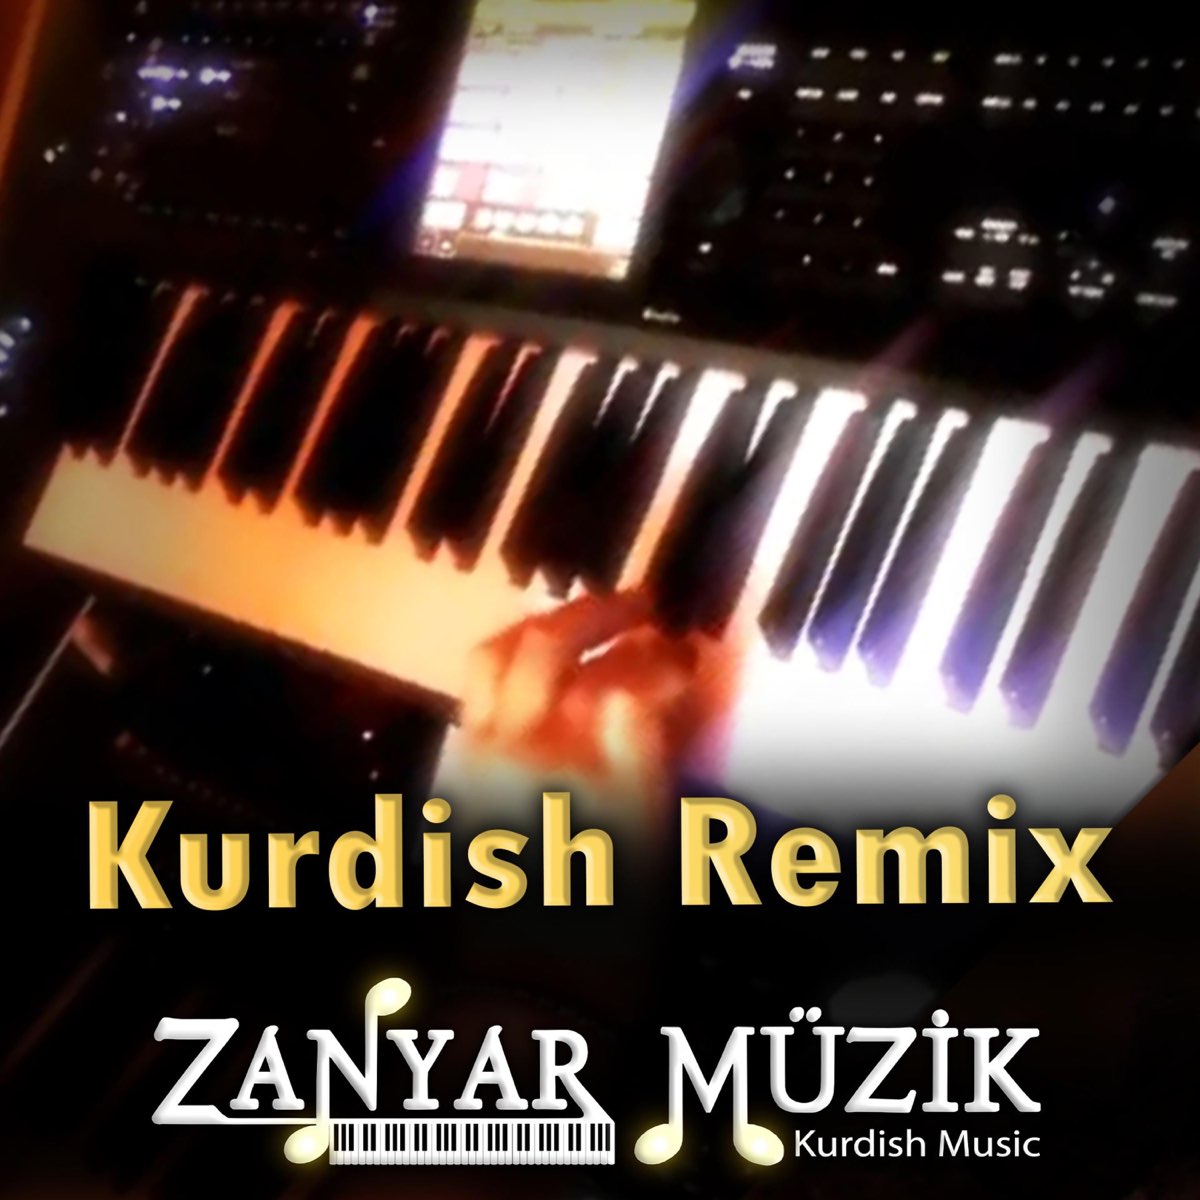 Kurdish Remix - Kürtçe Müzik - Single - Album by ZANYAR MÜZİK - Apple Music